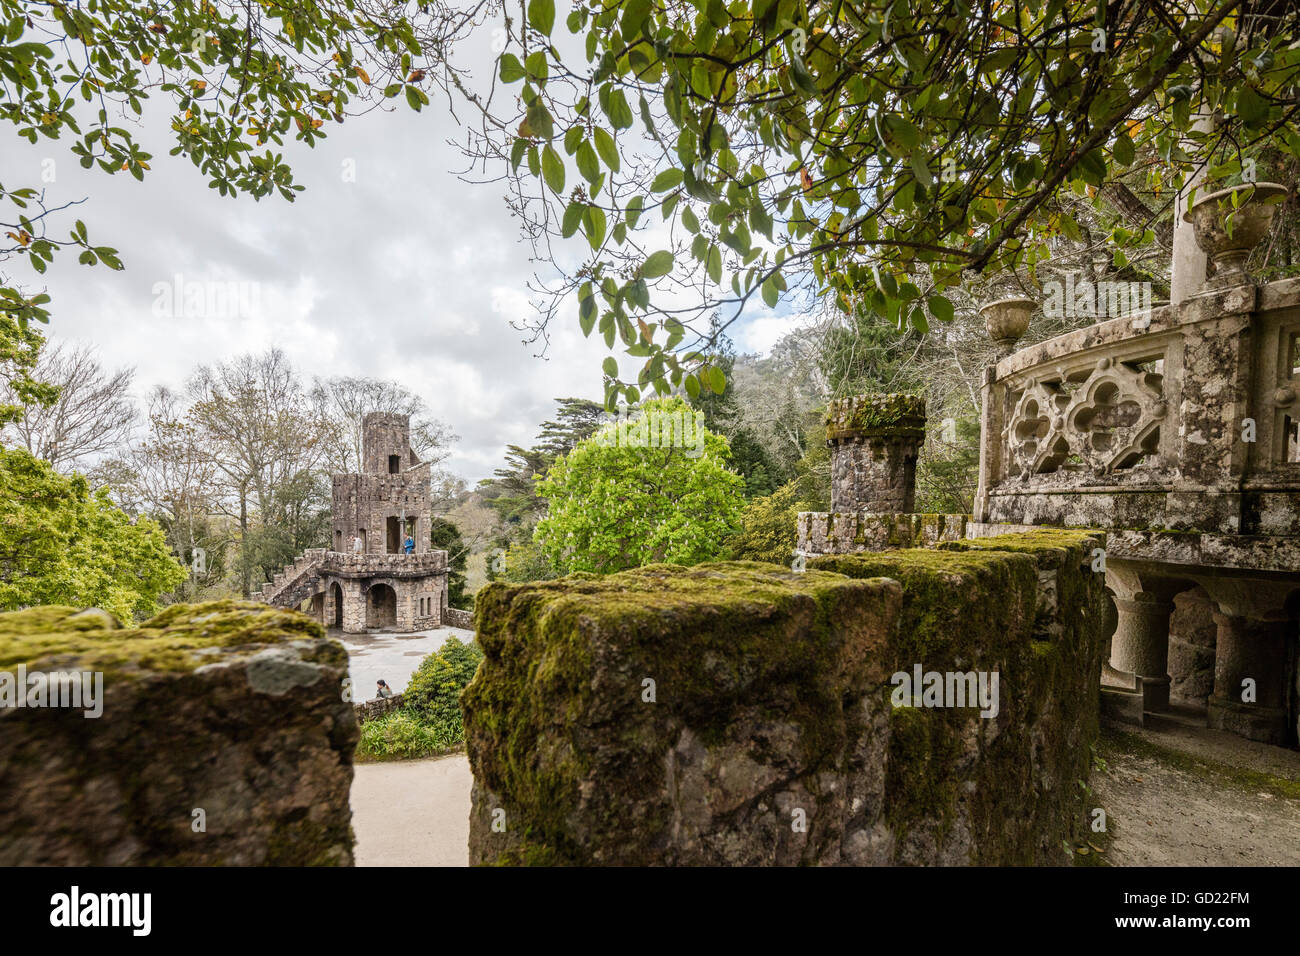 Construcciones místico románico de estilo gótico y renacentista en el interior del parque Quinta da Regaleira, Sintra, Portugal, Europa Foto de stock